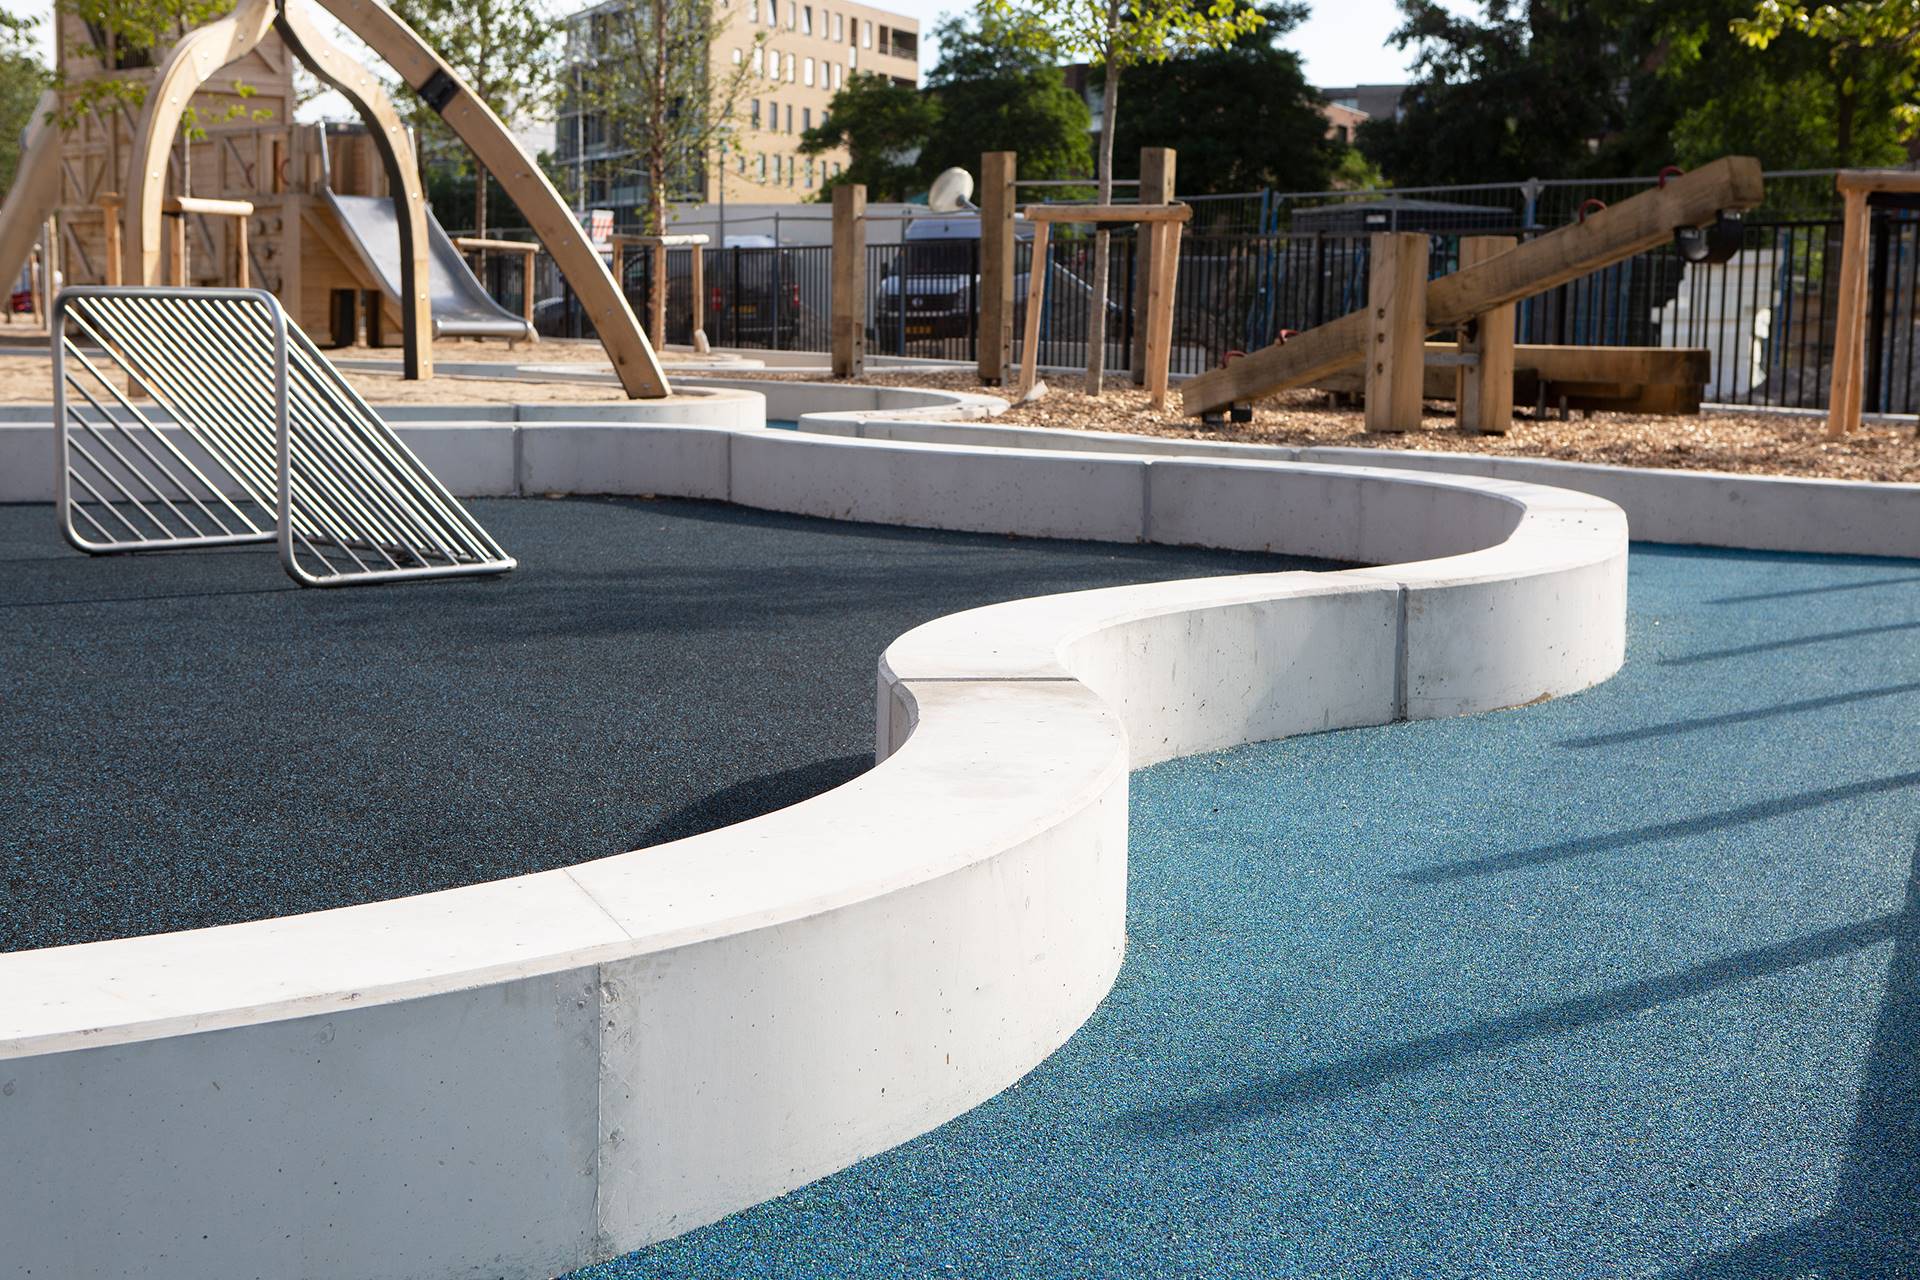 Funenpark, Amsterdam - De looppaden van de speeltuin zijn gemaakt van rubber, omdat daarmee water het best kan worden nagebootst